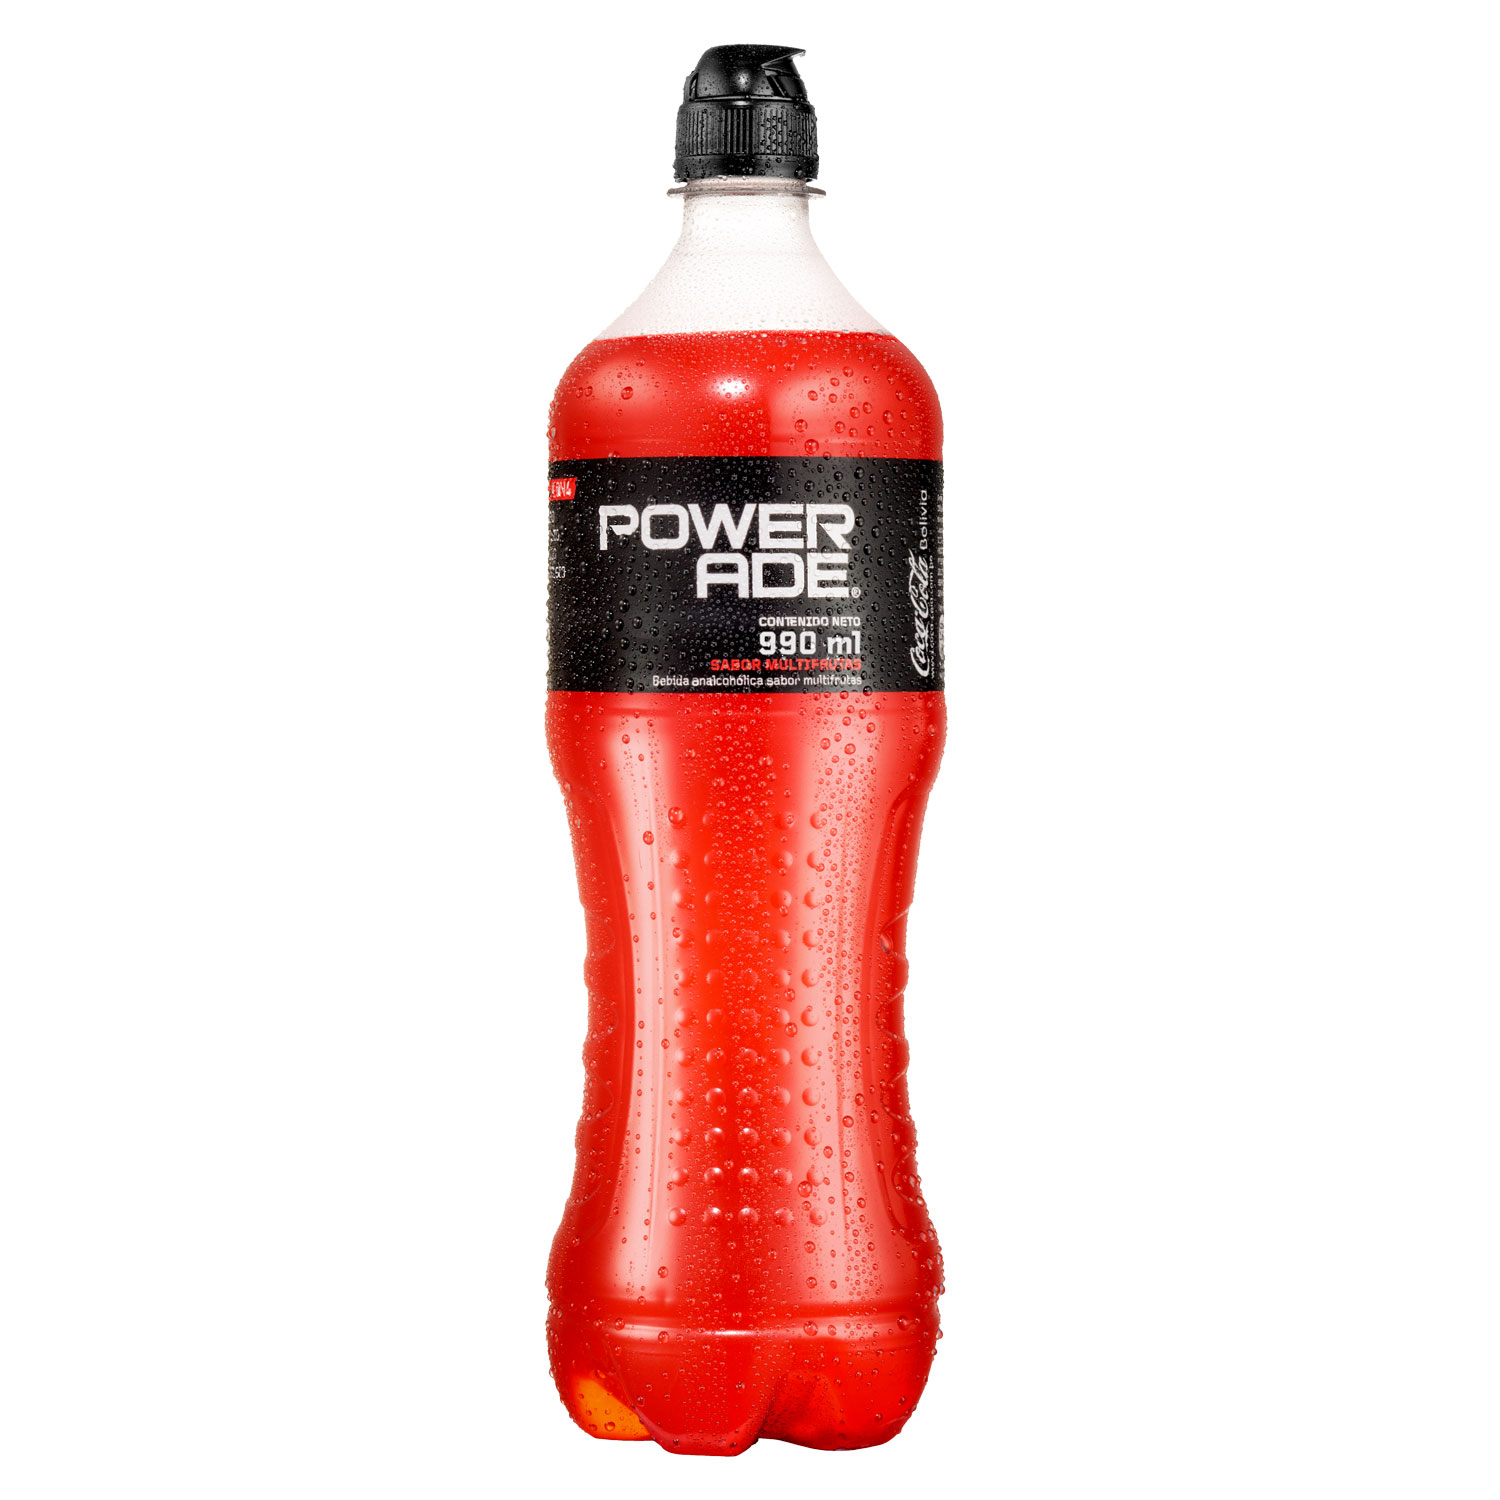 Botella de Powerade Multifrutas 990mL